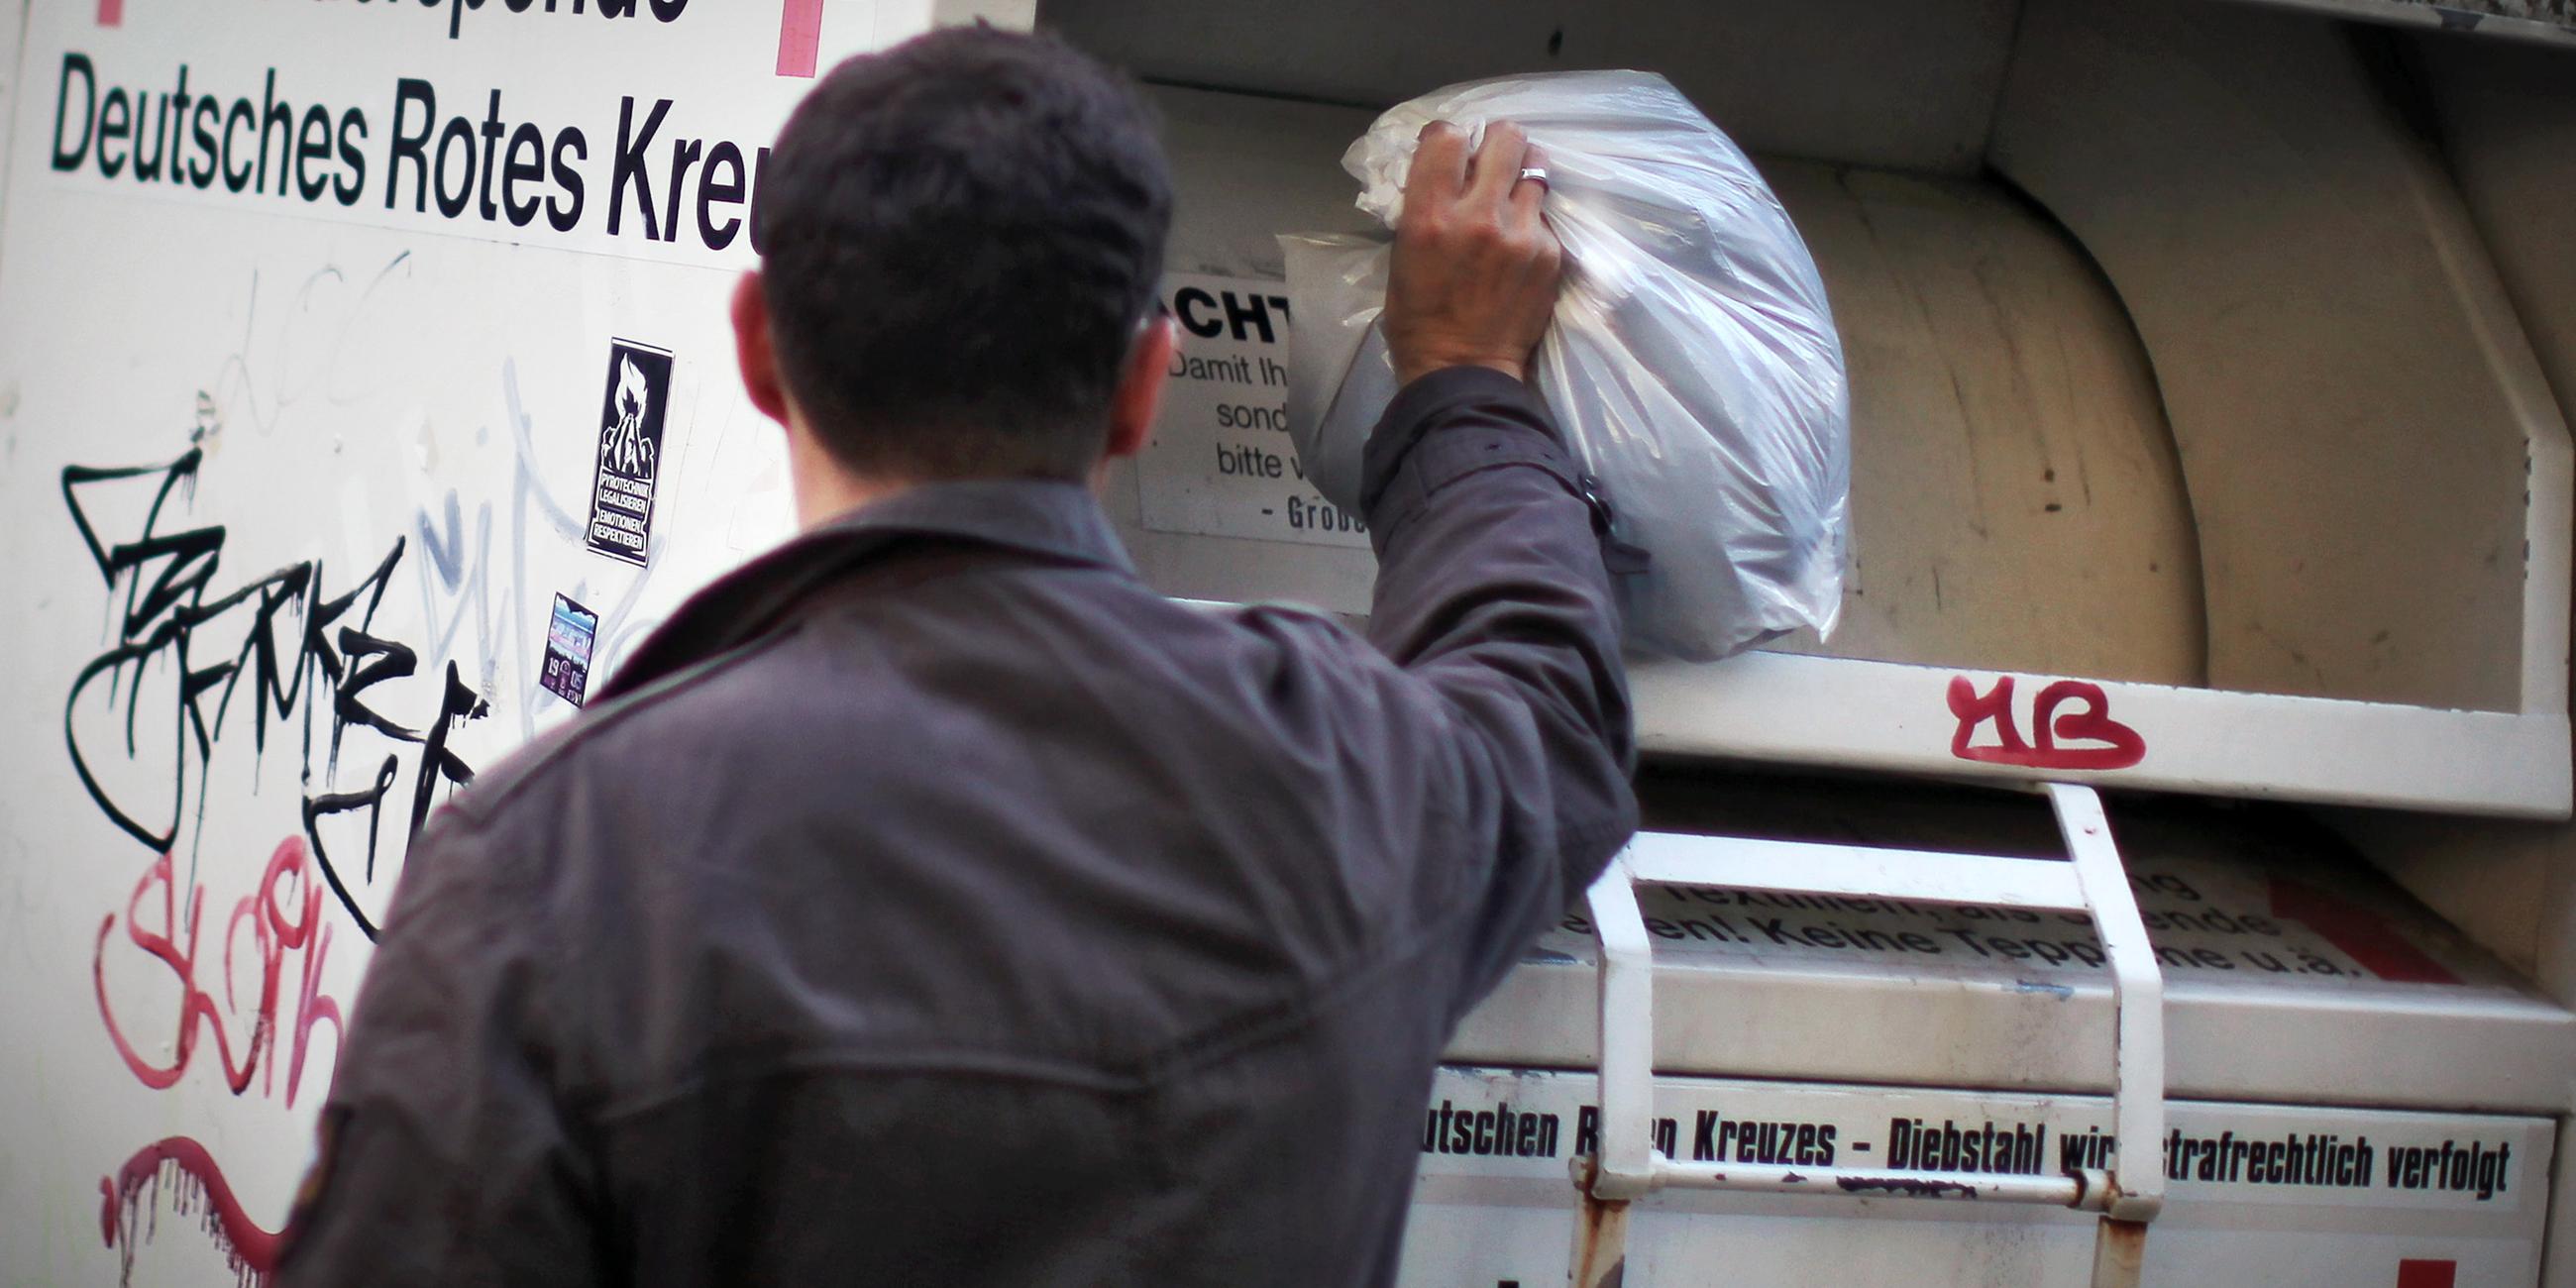 Ein Mann wirft einen Beutel in einen Altkleider-Container des Deutschen Roten Kreuzes.